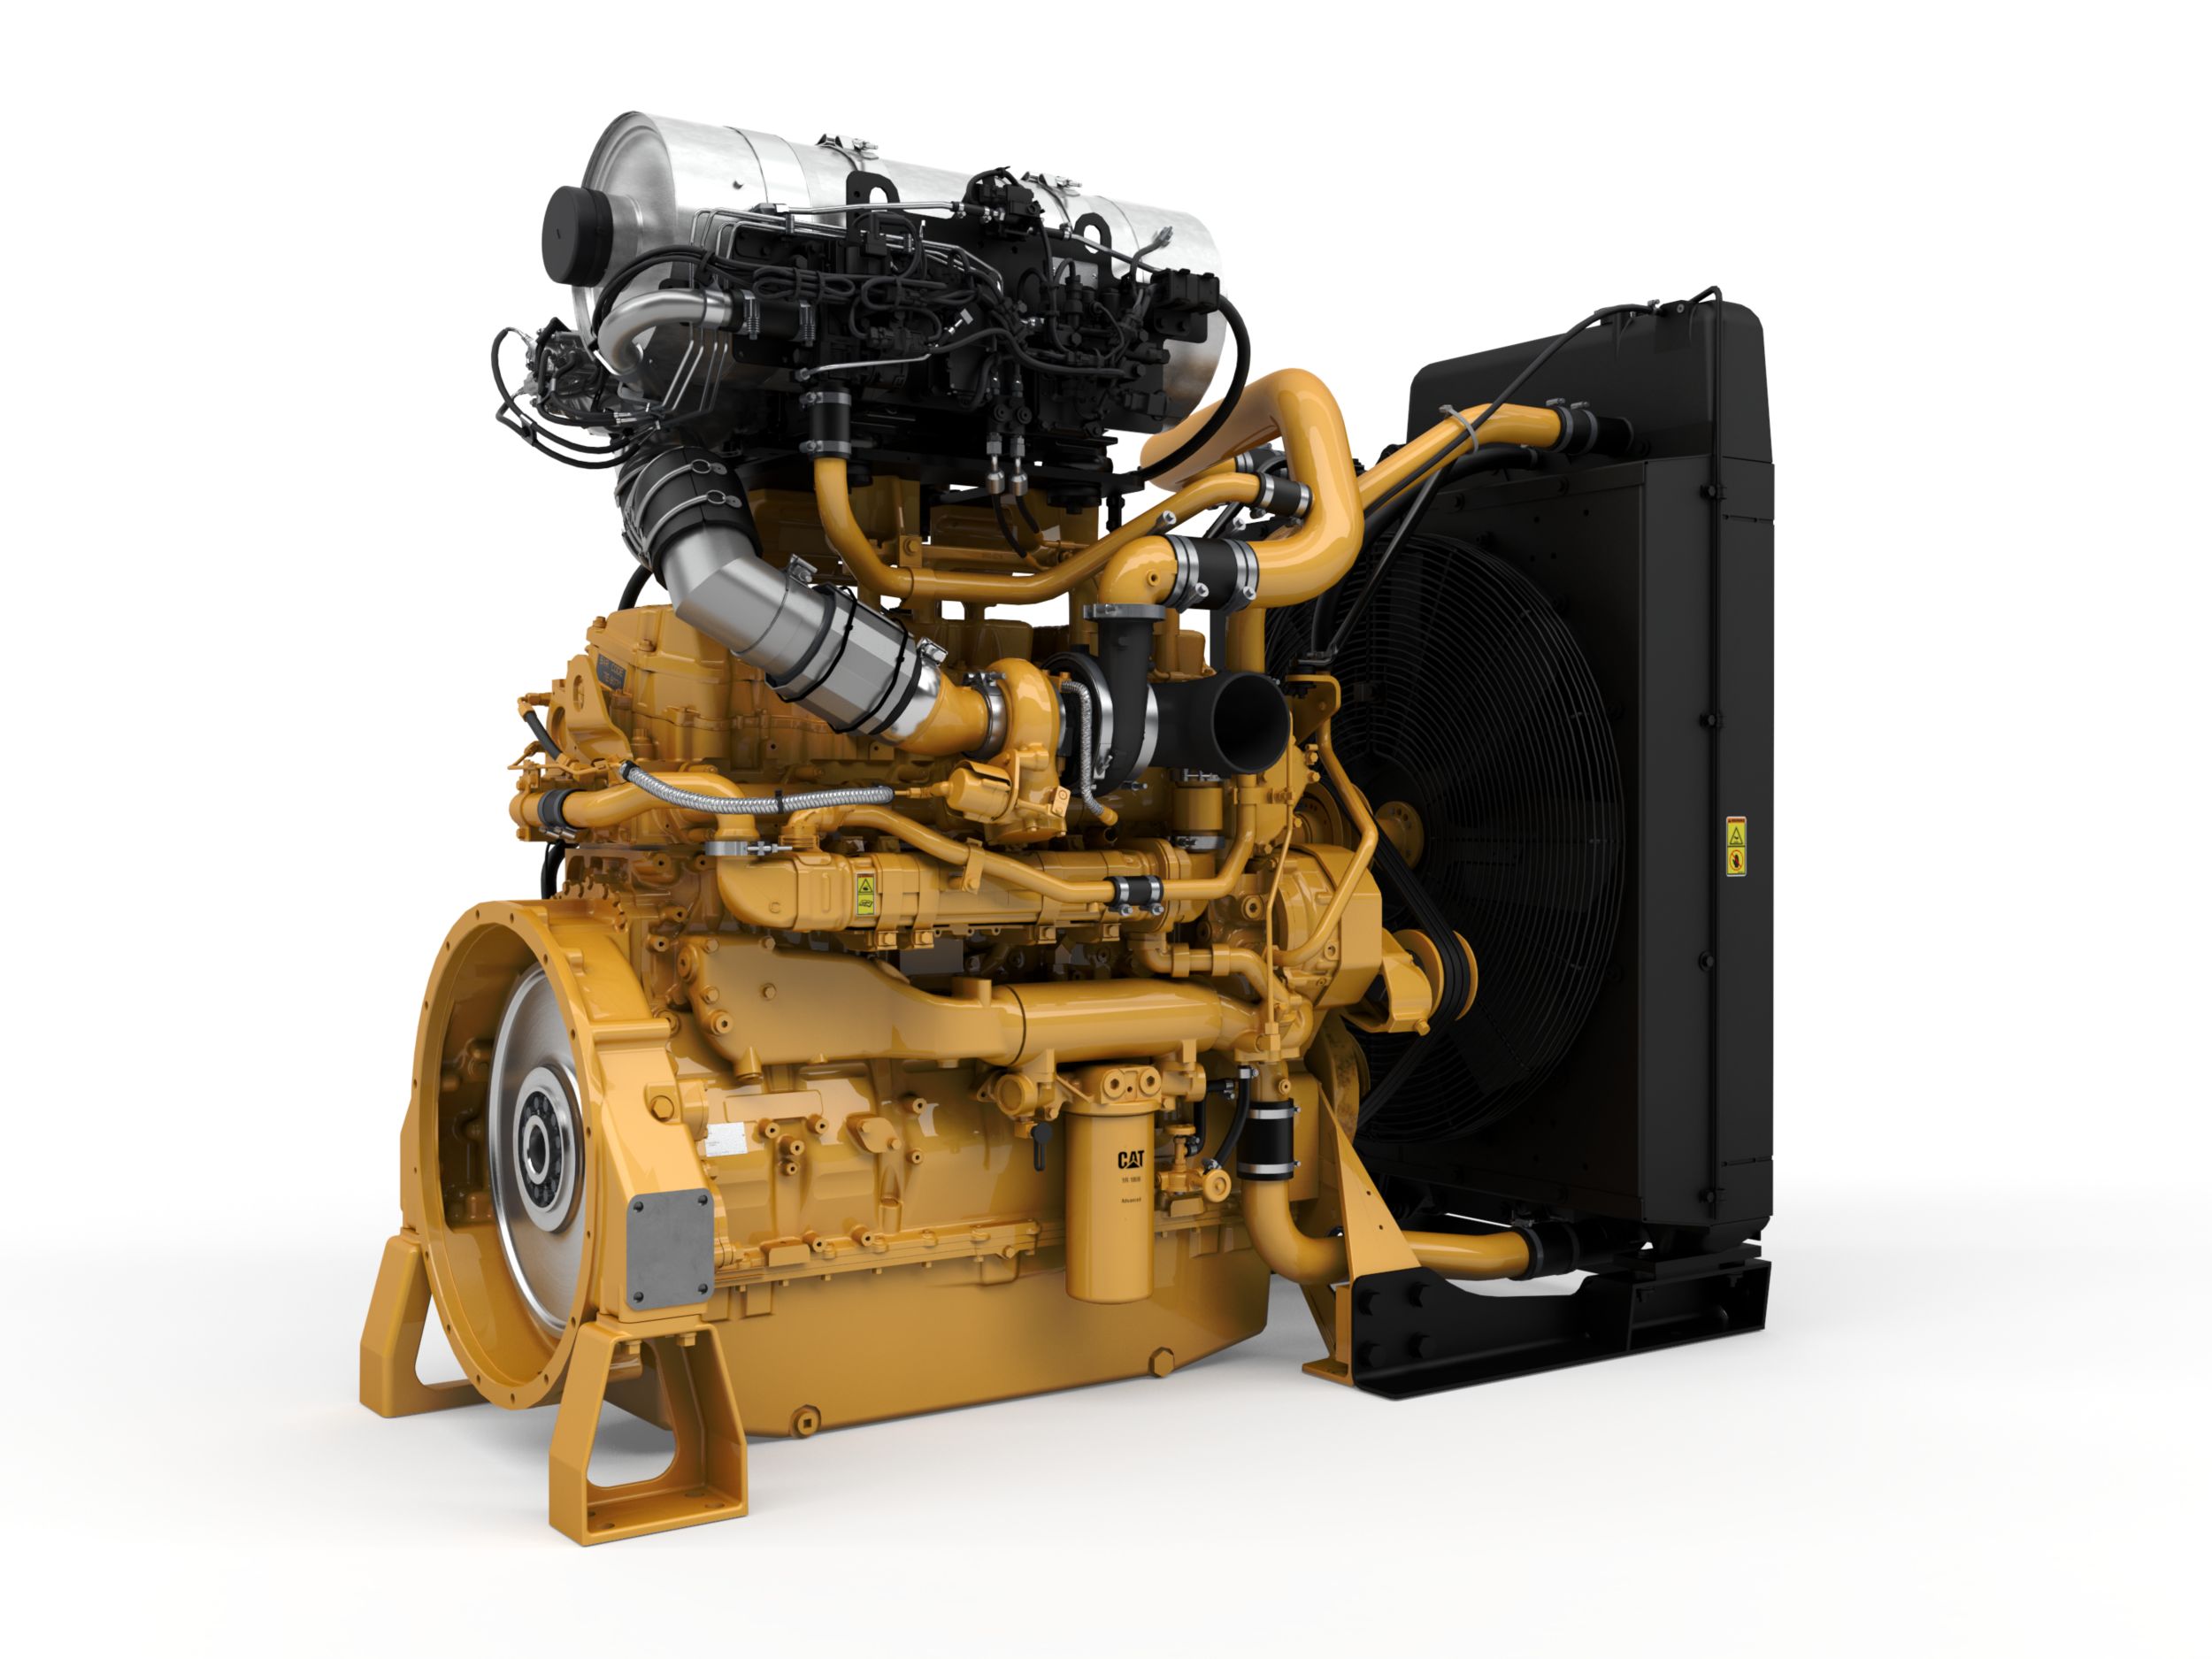 Дизельные двигатели C15 Tier 4 для промышленных силовых установок — для регионов со строгими требованиями